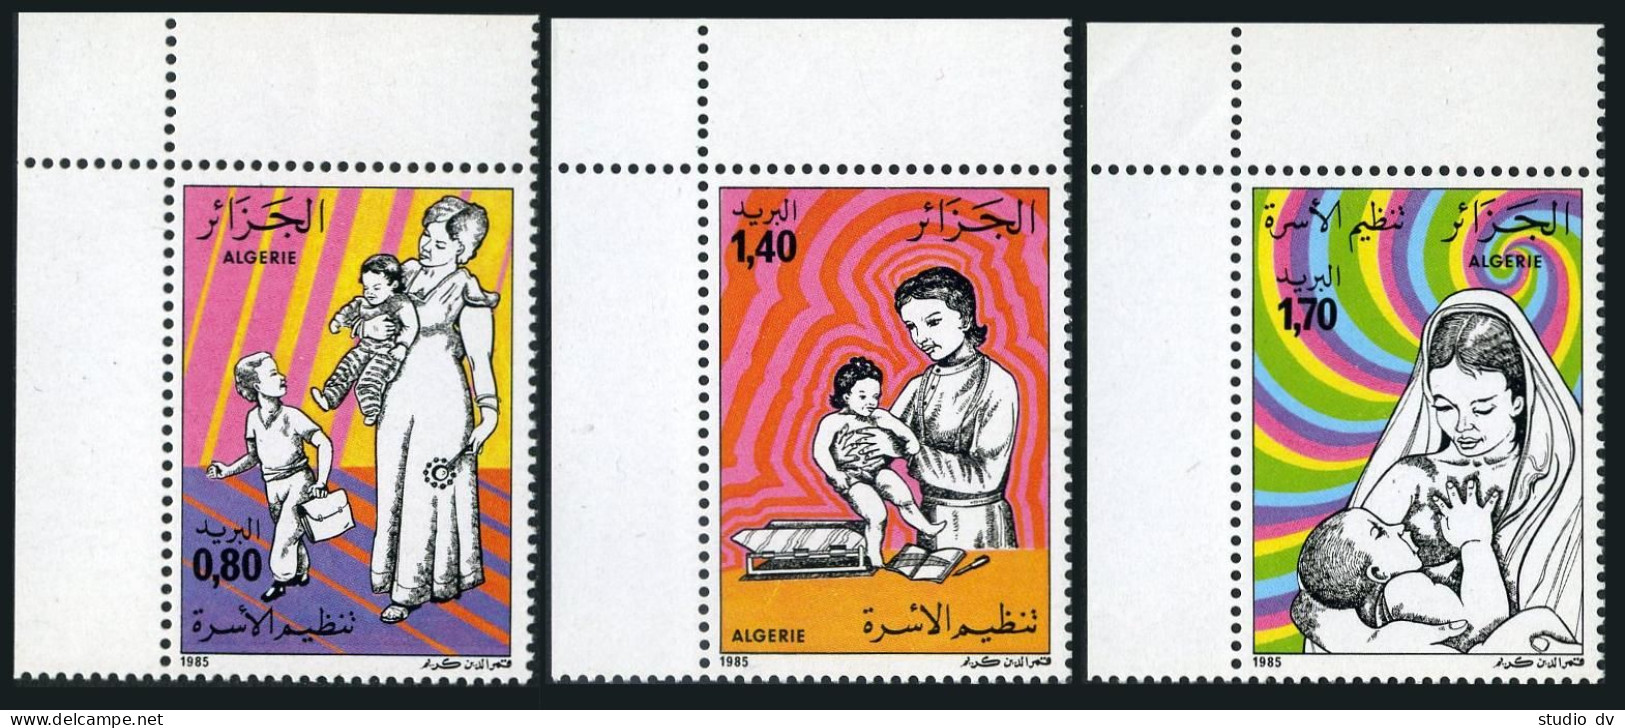 Algeria 789-791,MNH. Family Planing,1985. - Algeria (1962-...)